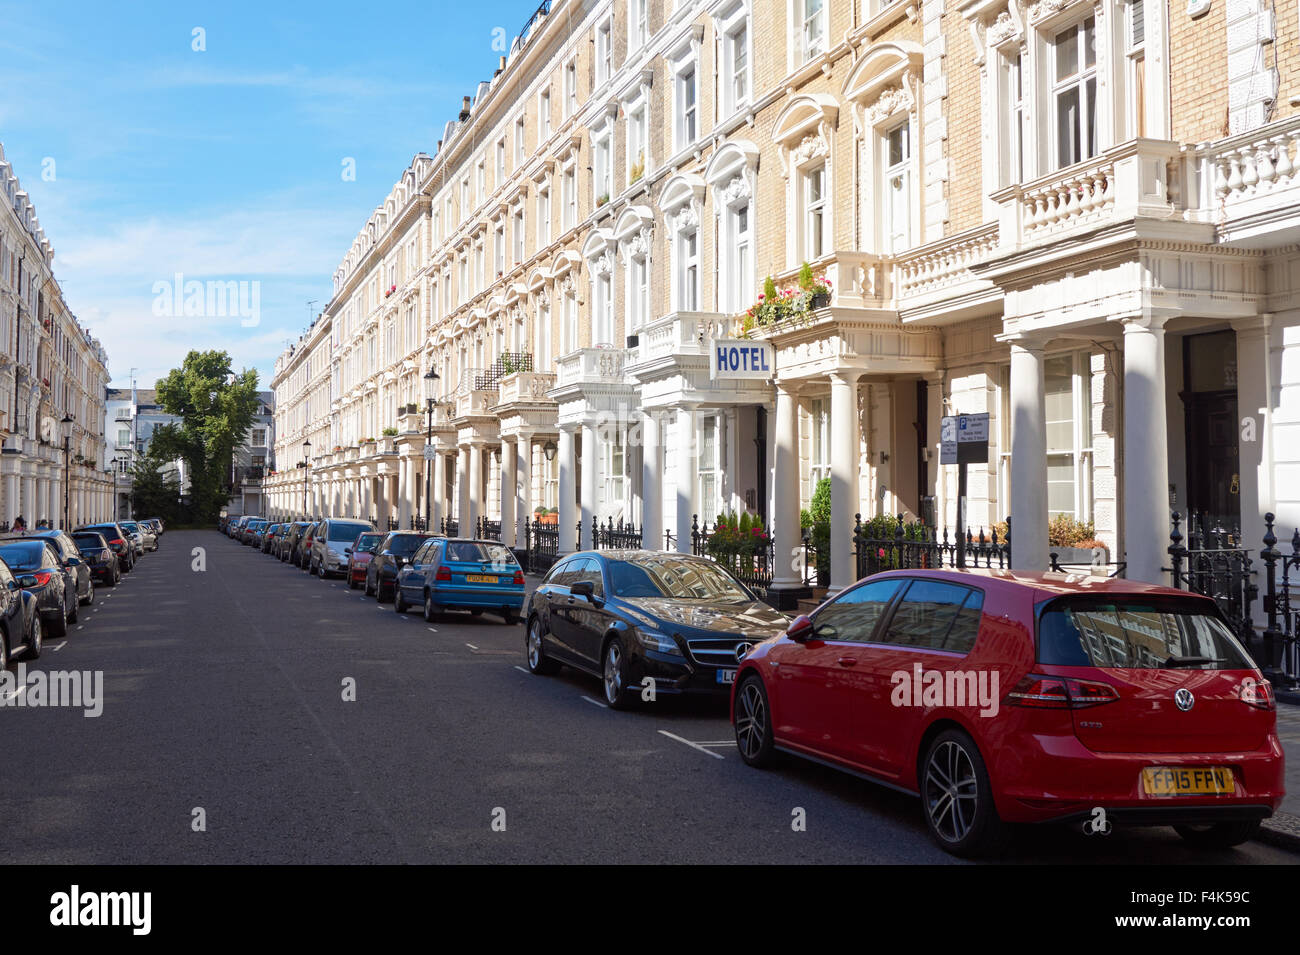 Bâtiments victoriens dans la rue résidentielle de Notting Hill, Kensington, West London Angleterre Royaume-Uni Banque D'Images